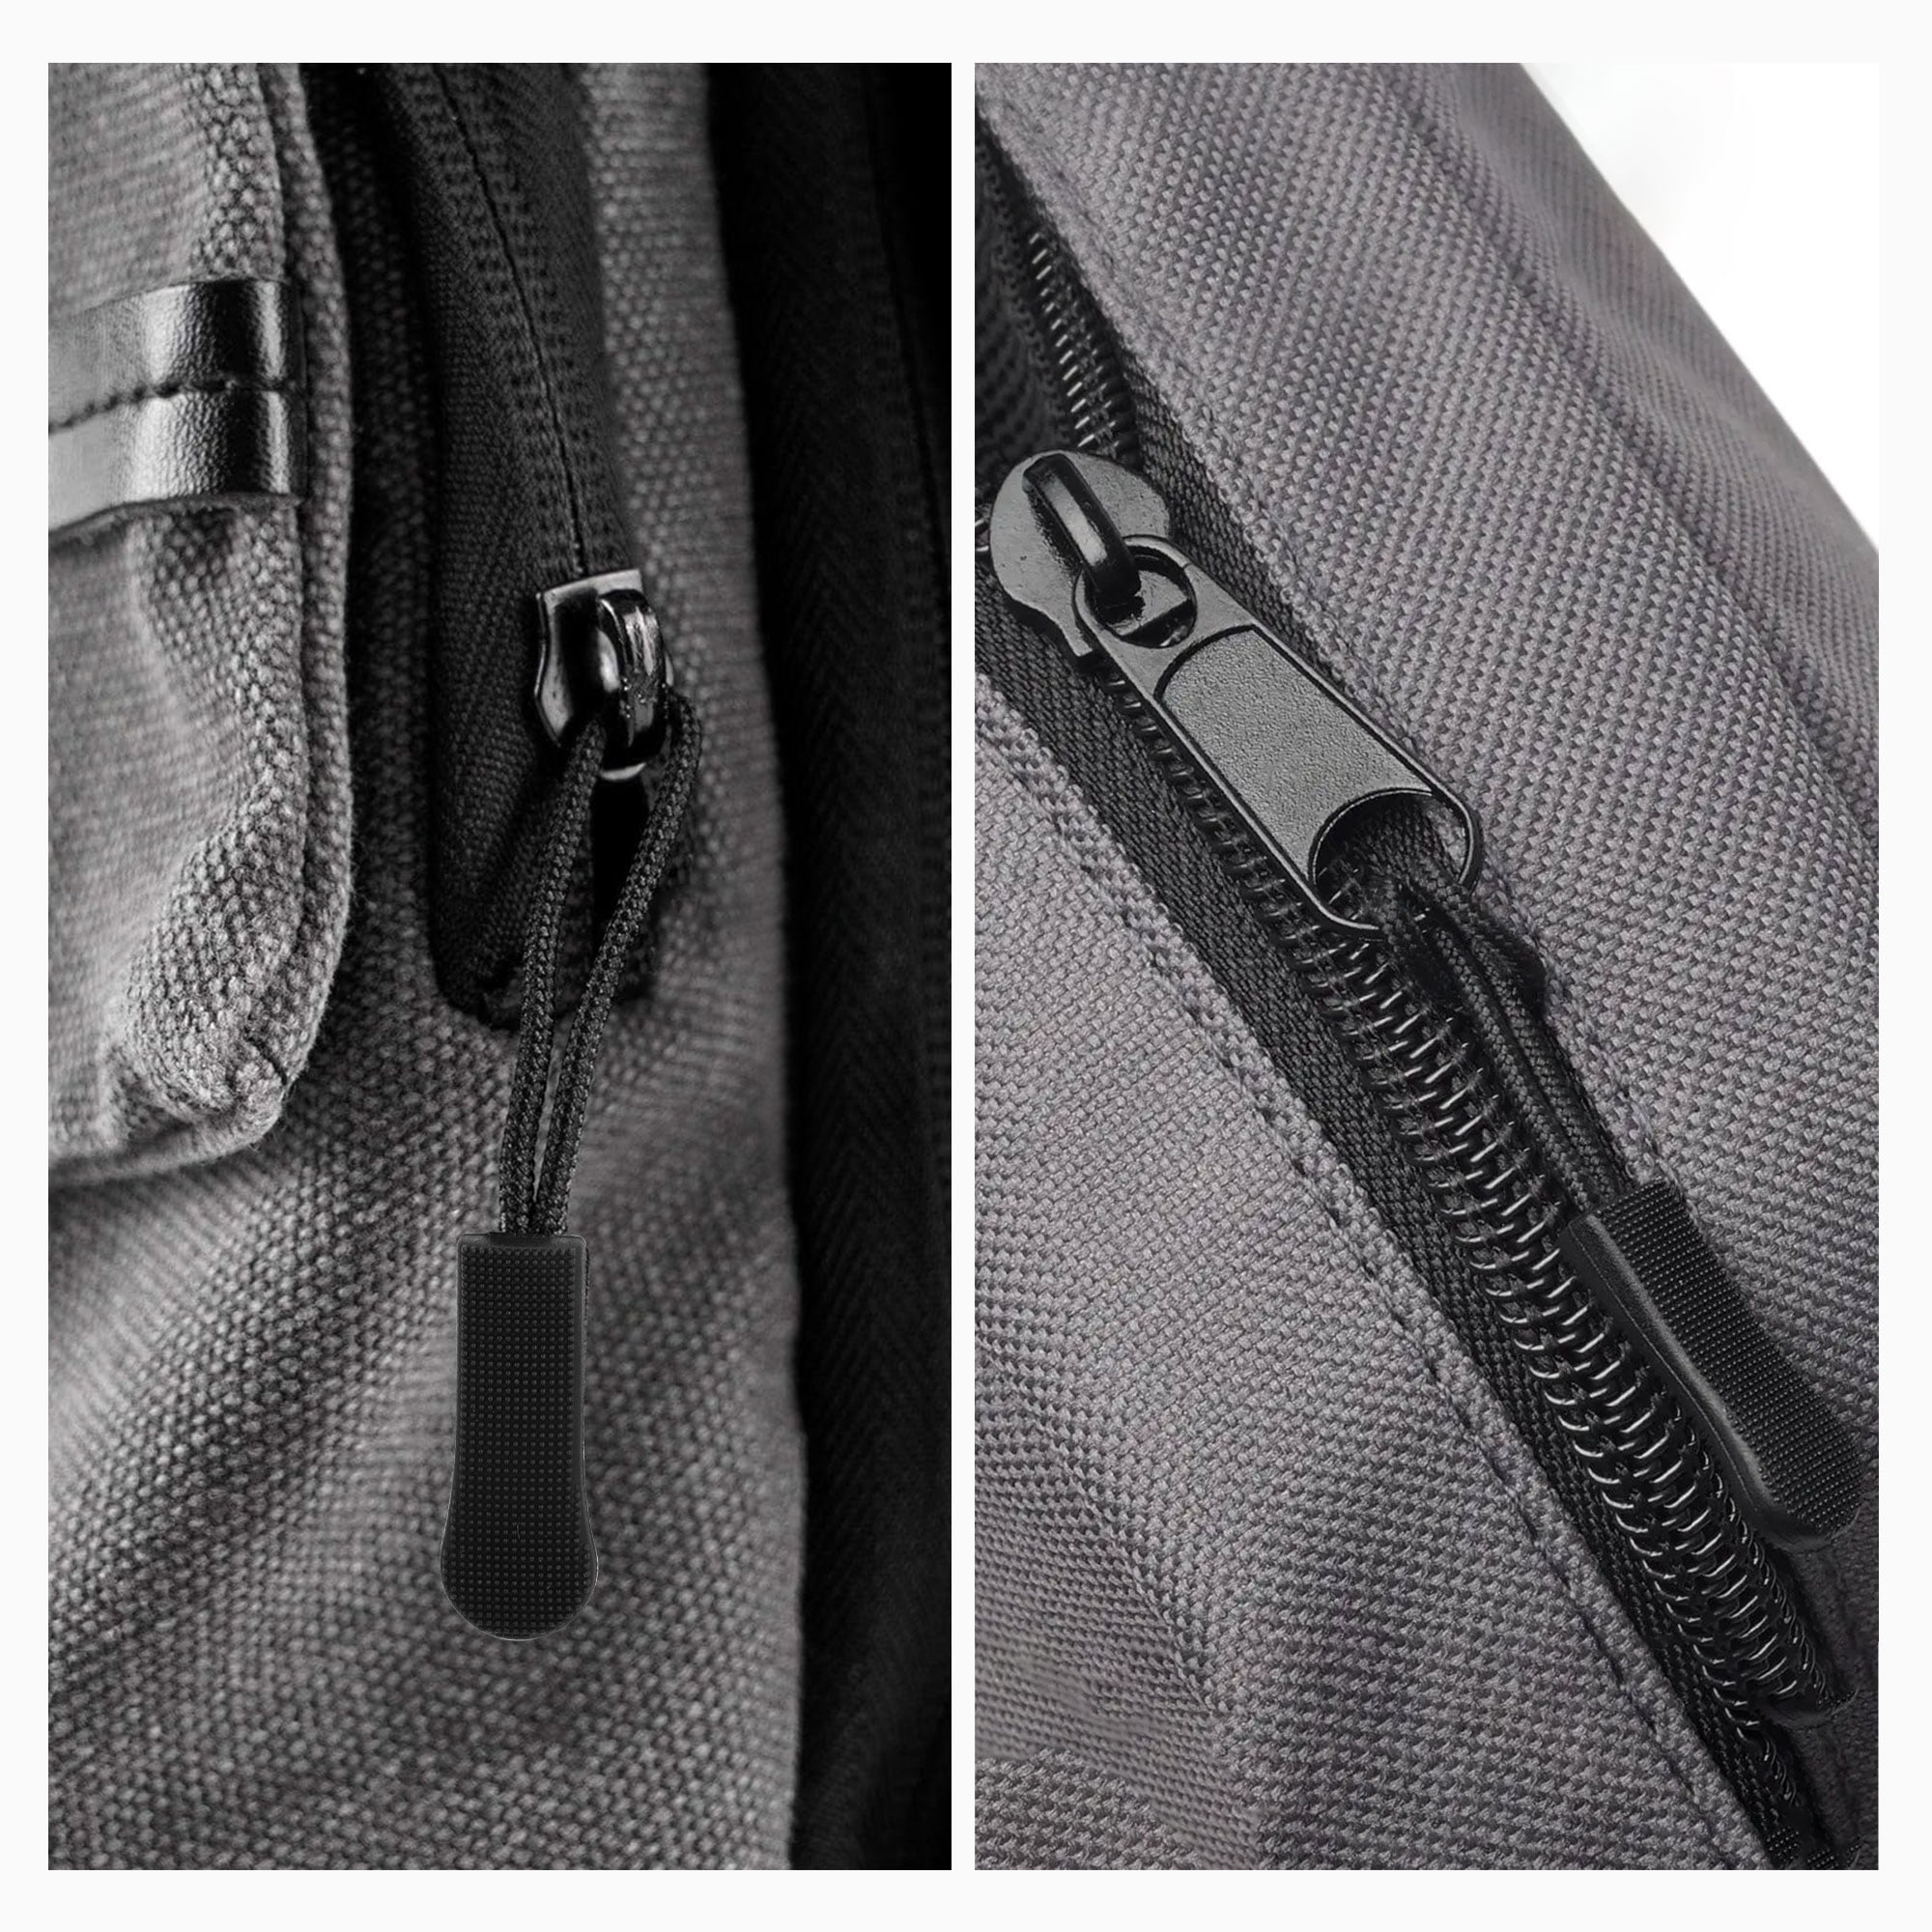 197Pcs Zipper Repair Kits Craft Fix Zip Puller for Handbags Suitcase  Clothes